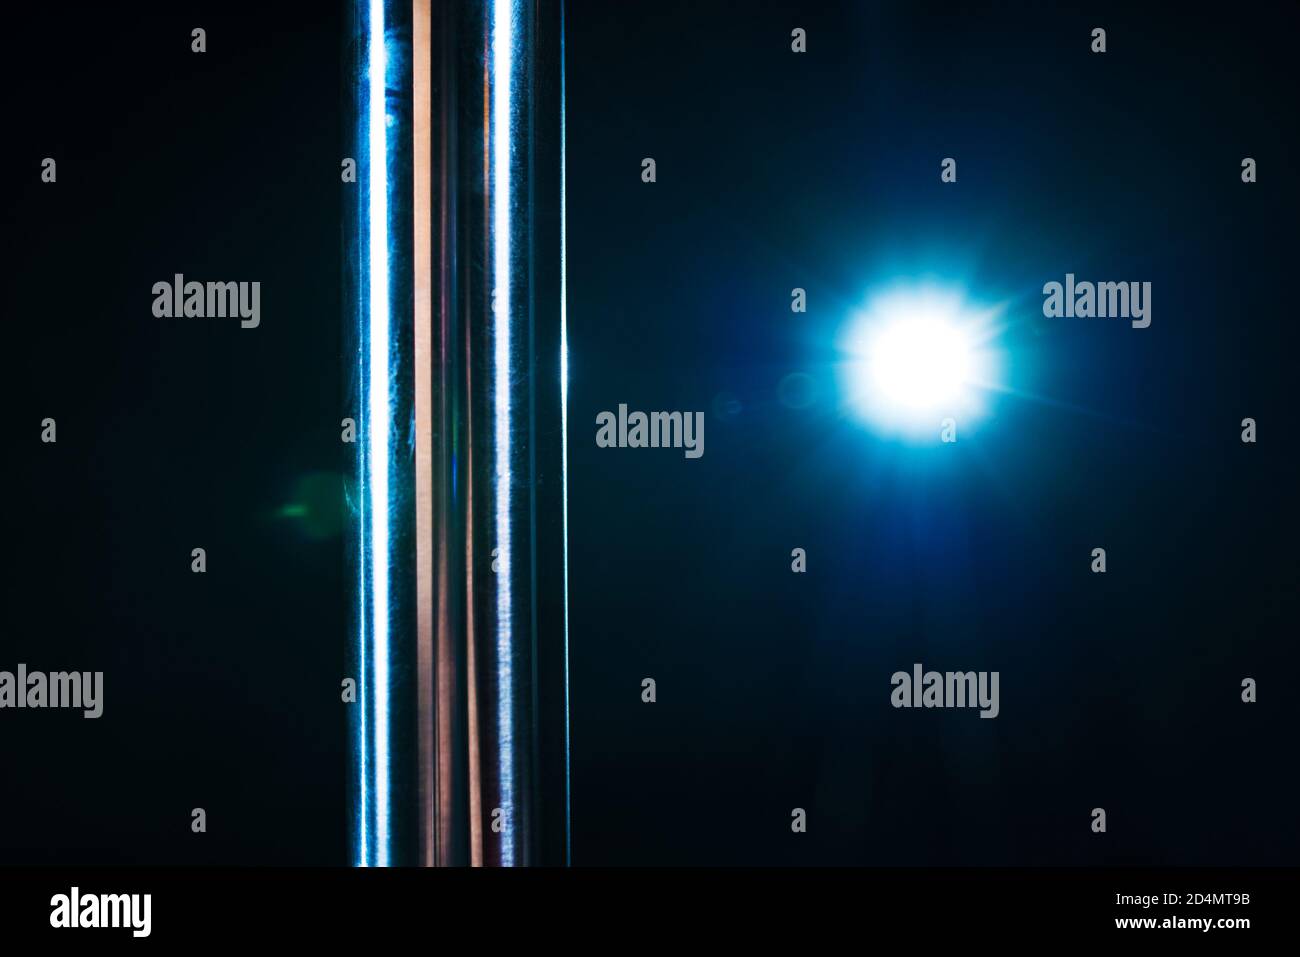 Metallic-Stangenschlosung und blaues Licht vom Blitz auf dunklem Hintergrund. Polentanz-Thema. Stockfoto